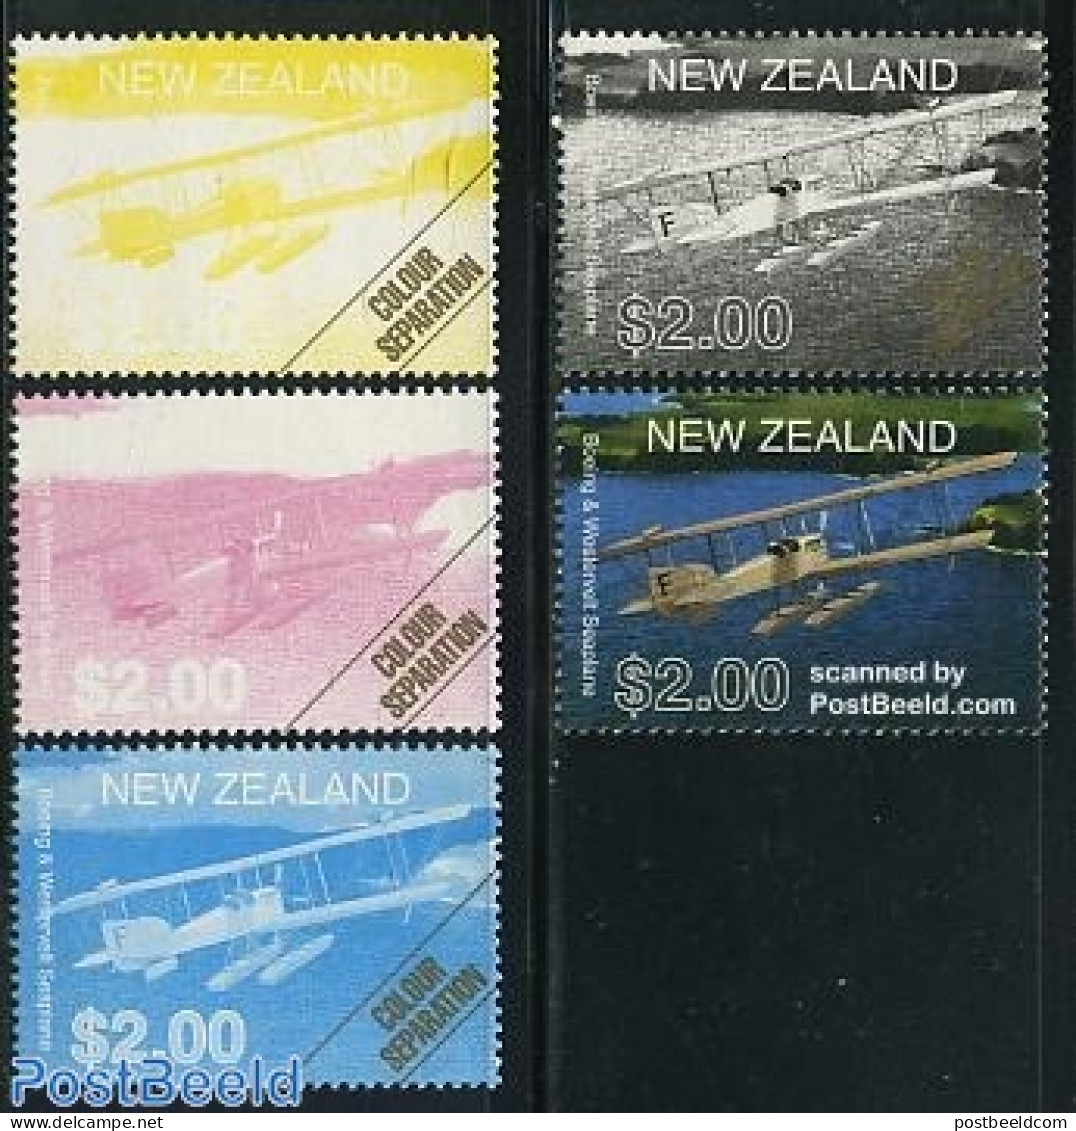 New Zealand 2001 Aircraft Colour Separation 4v+final Stamp, Mint NH, Transport - Aircraft & Aviation - Ungebraucht